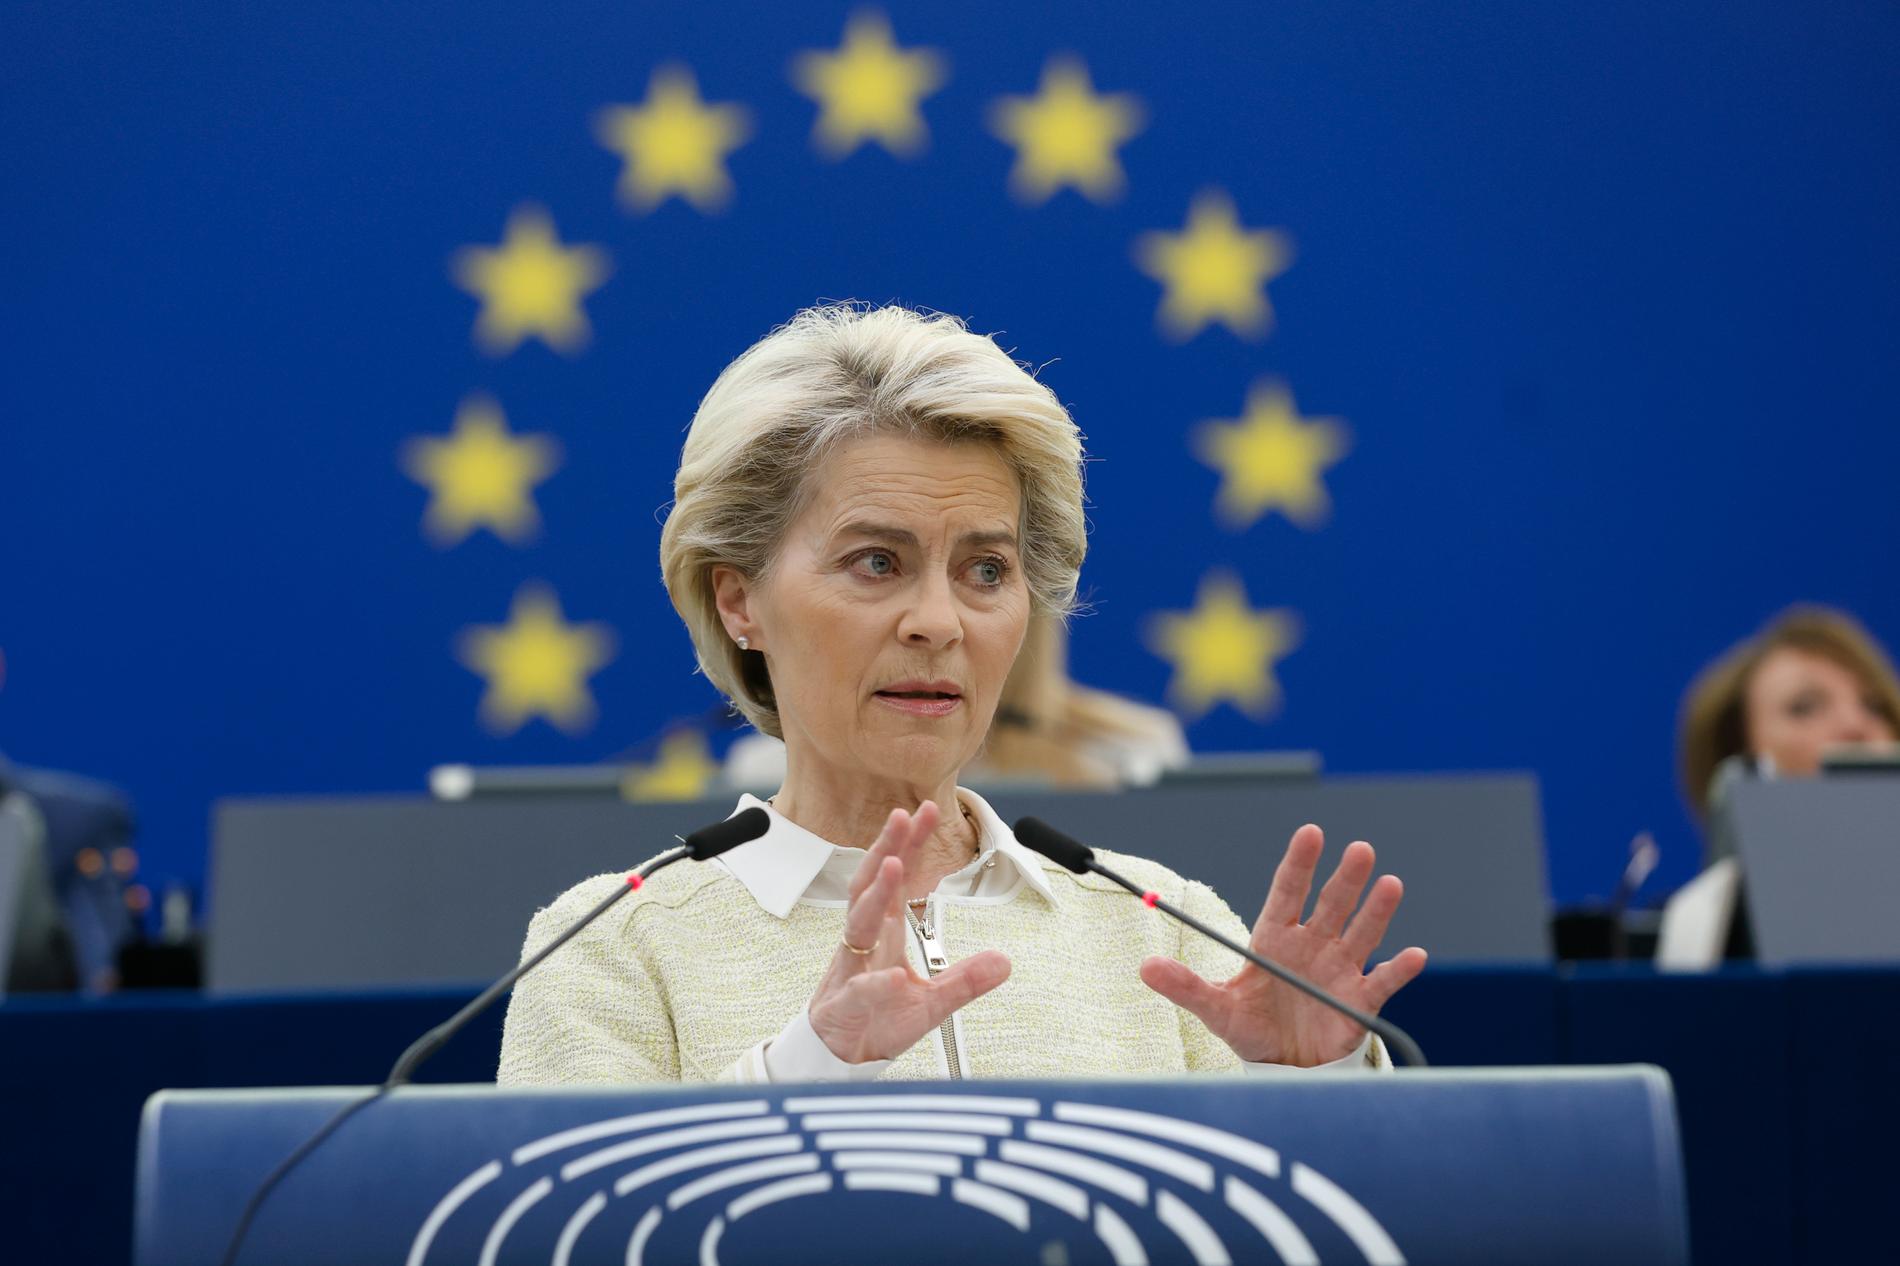 EU:s kommissionsordförande Ursula von der Leyen.